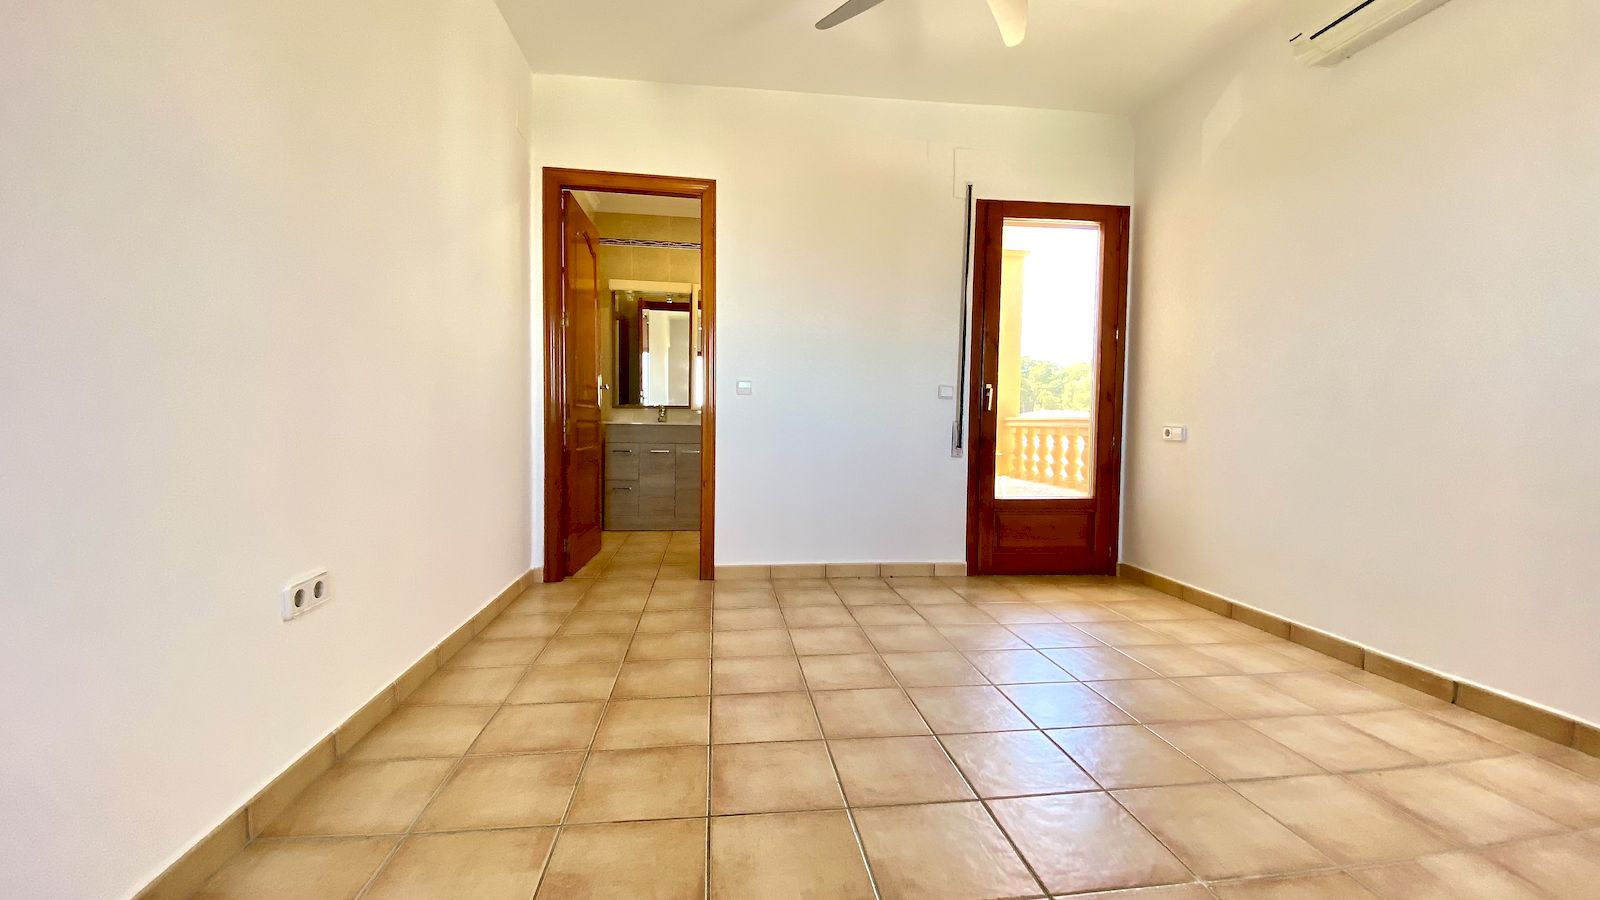 Villa for Sale with Sea View in Balcon al Mar - Javea